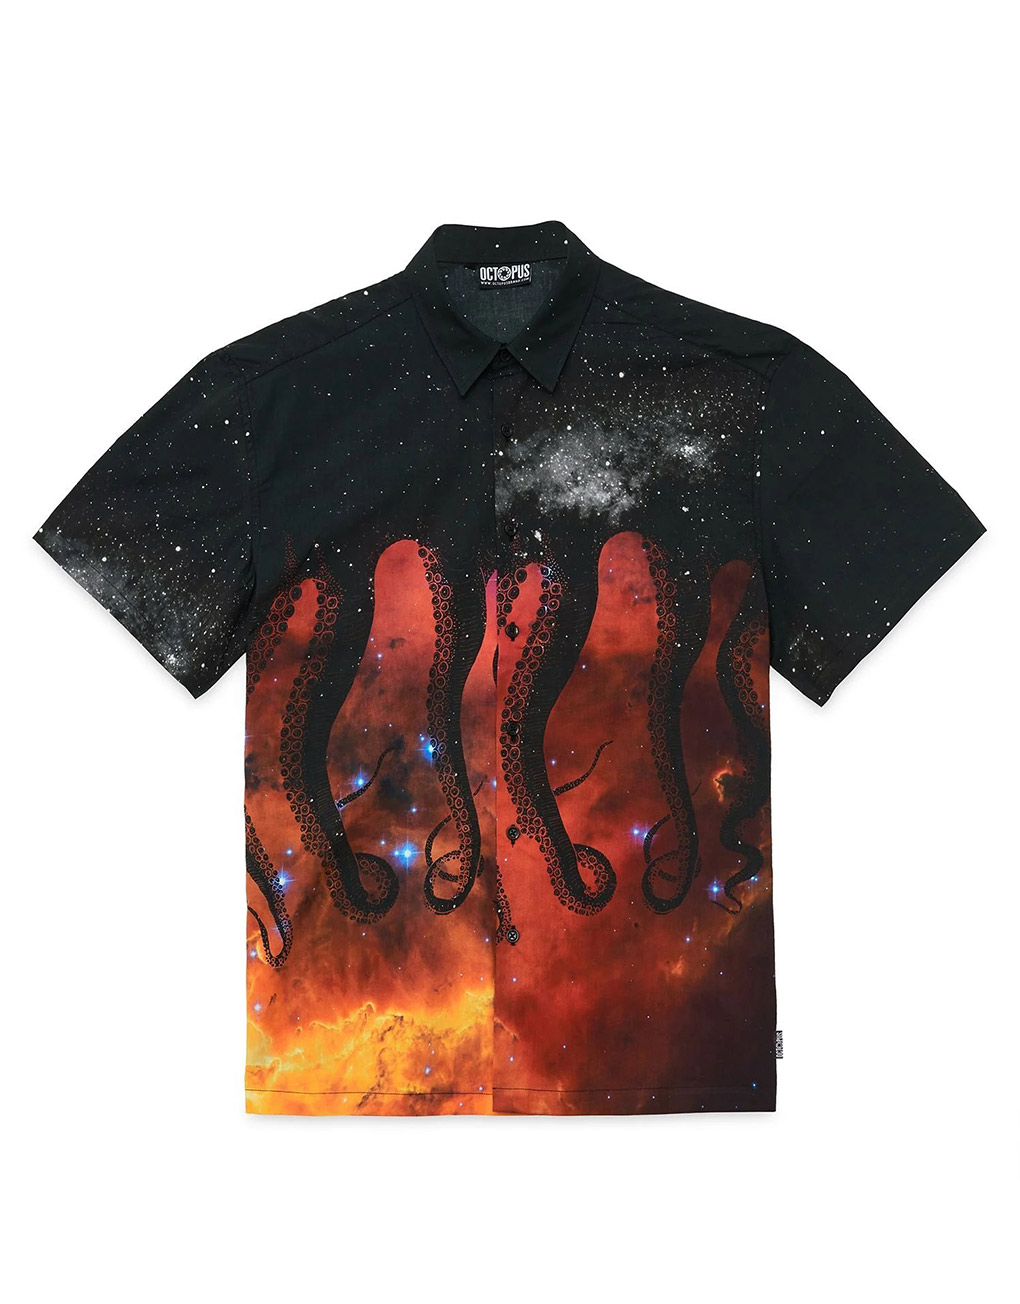 OCTOPUS – Galaxy shirt